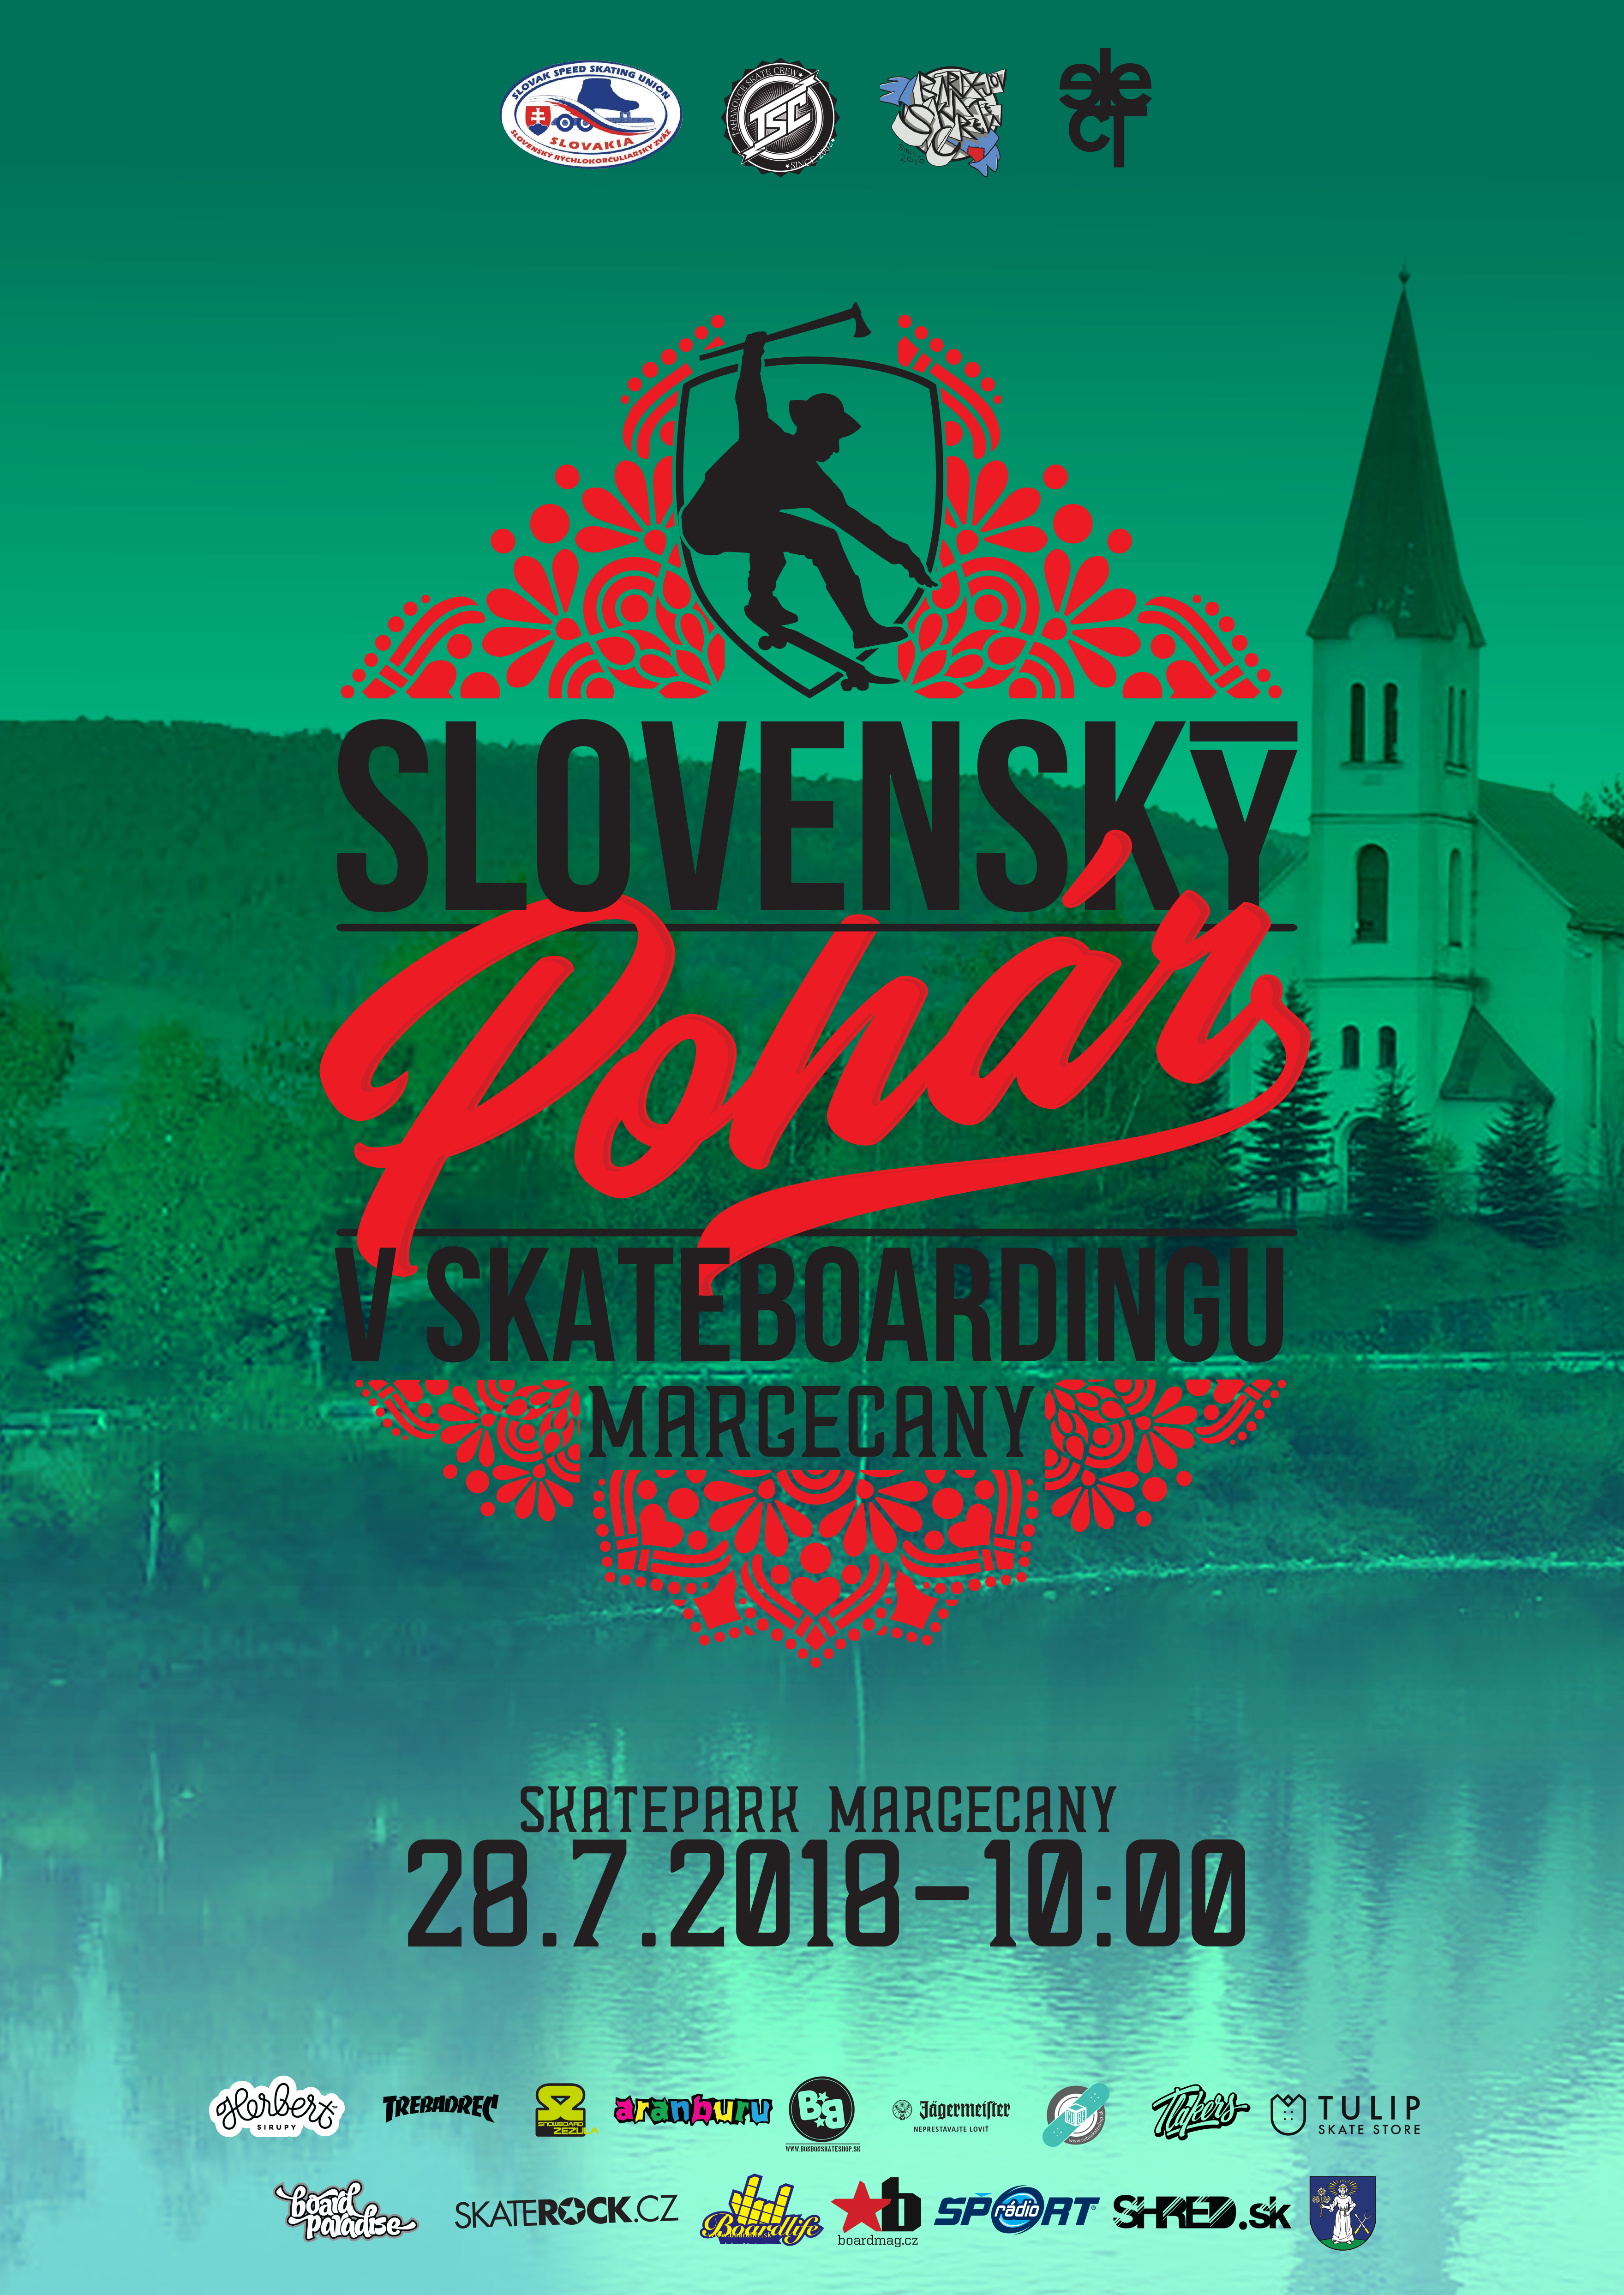 Skateboarding: 3.kolo Slovenského pohára, Margecany - 28.7.2018